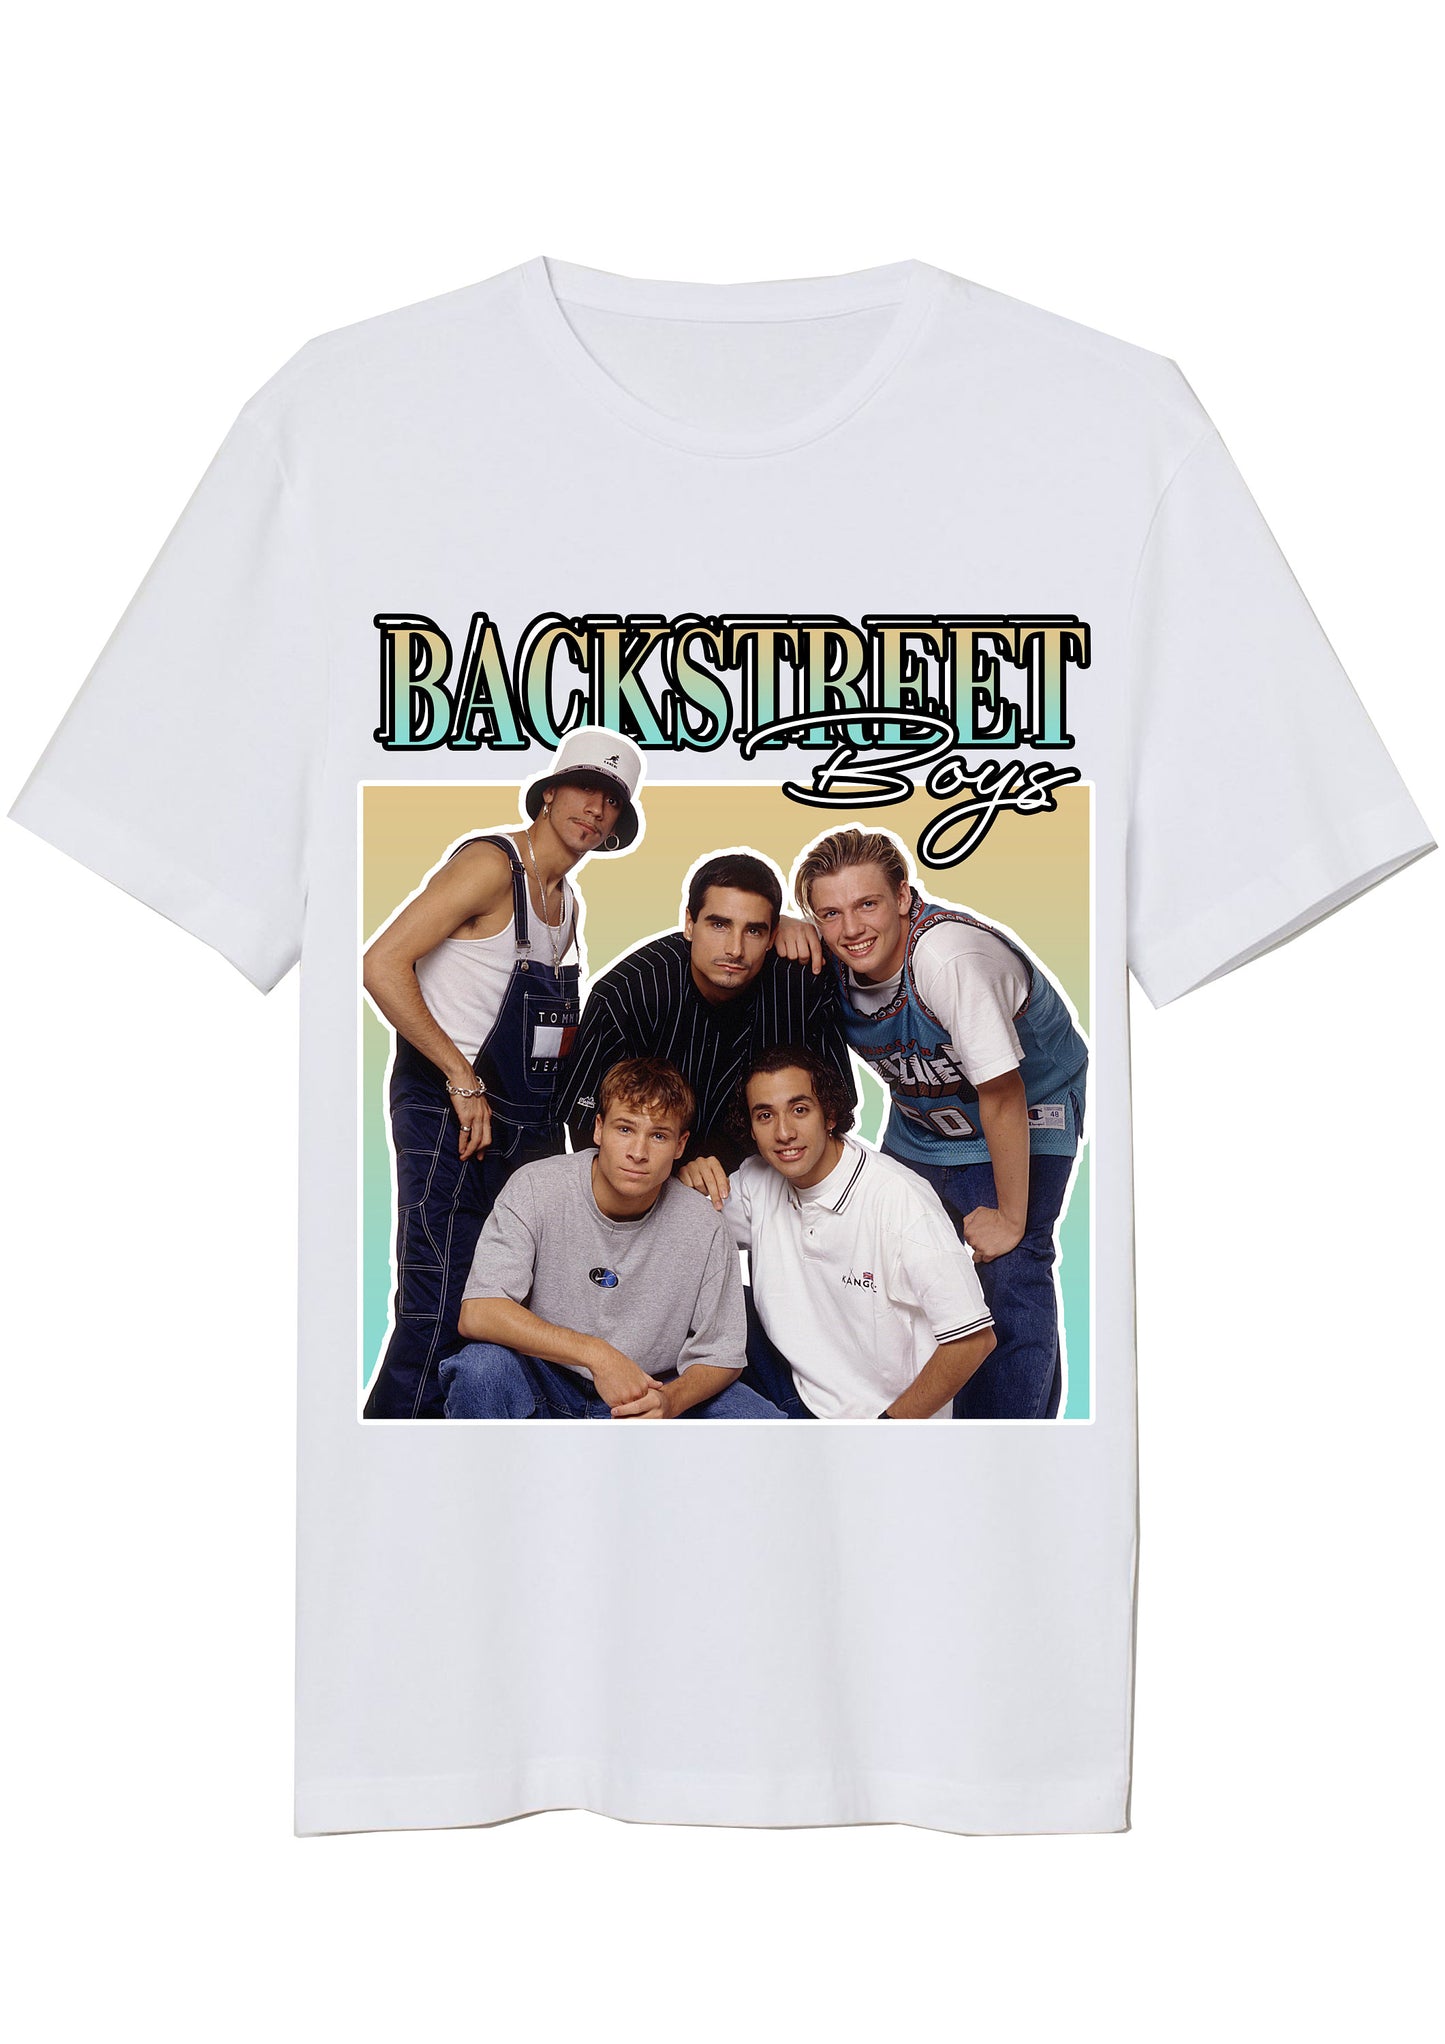 Backstreet Boys Vintage T-Shirt